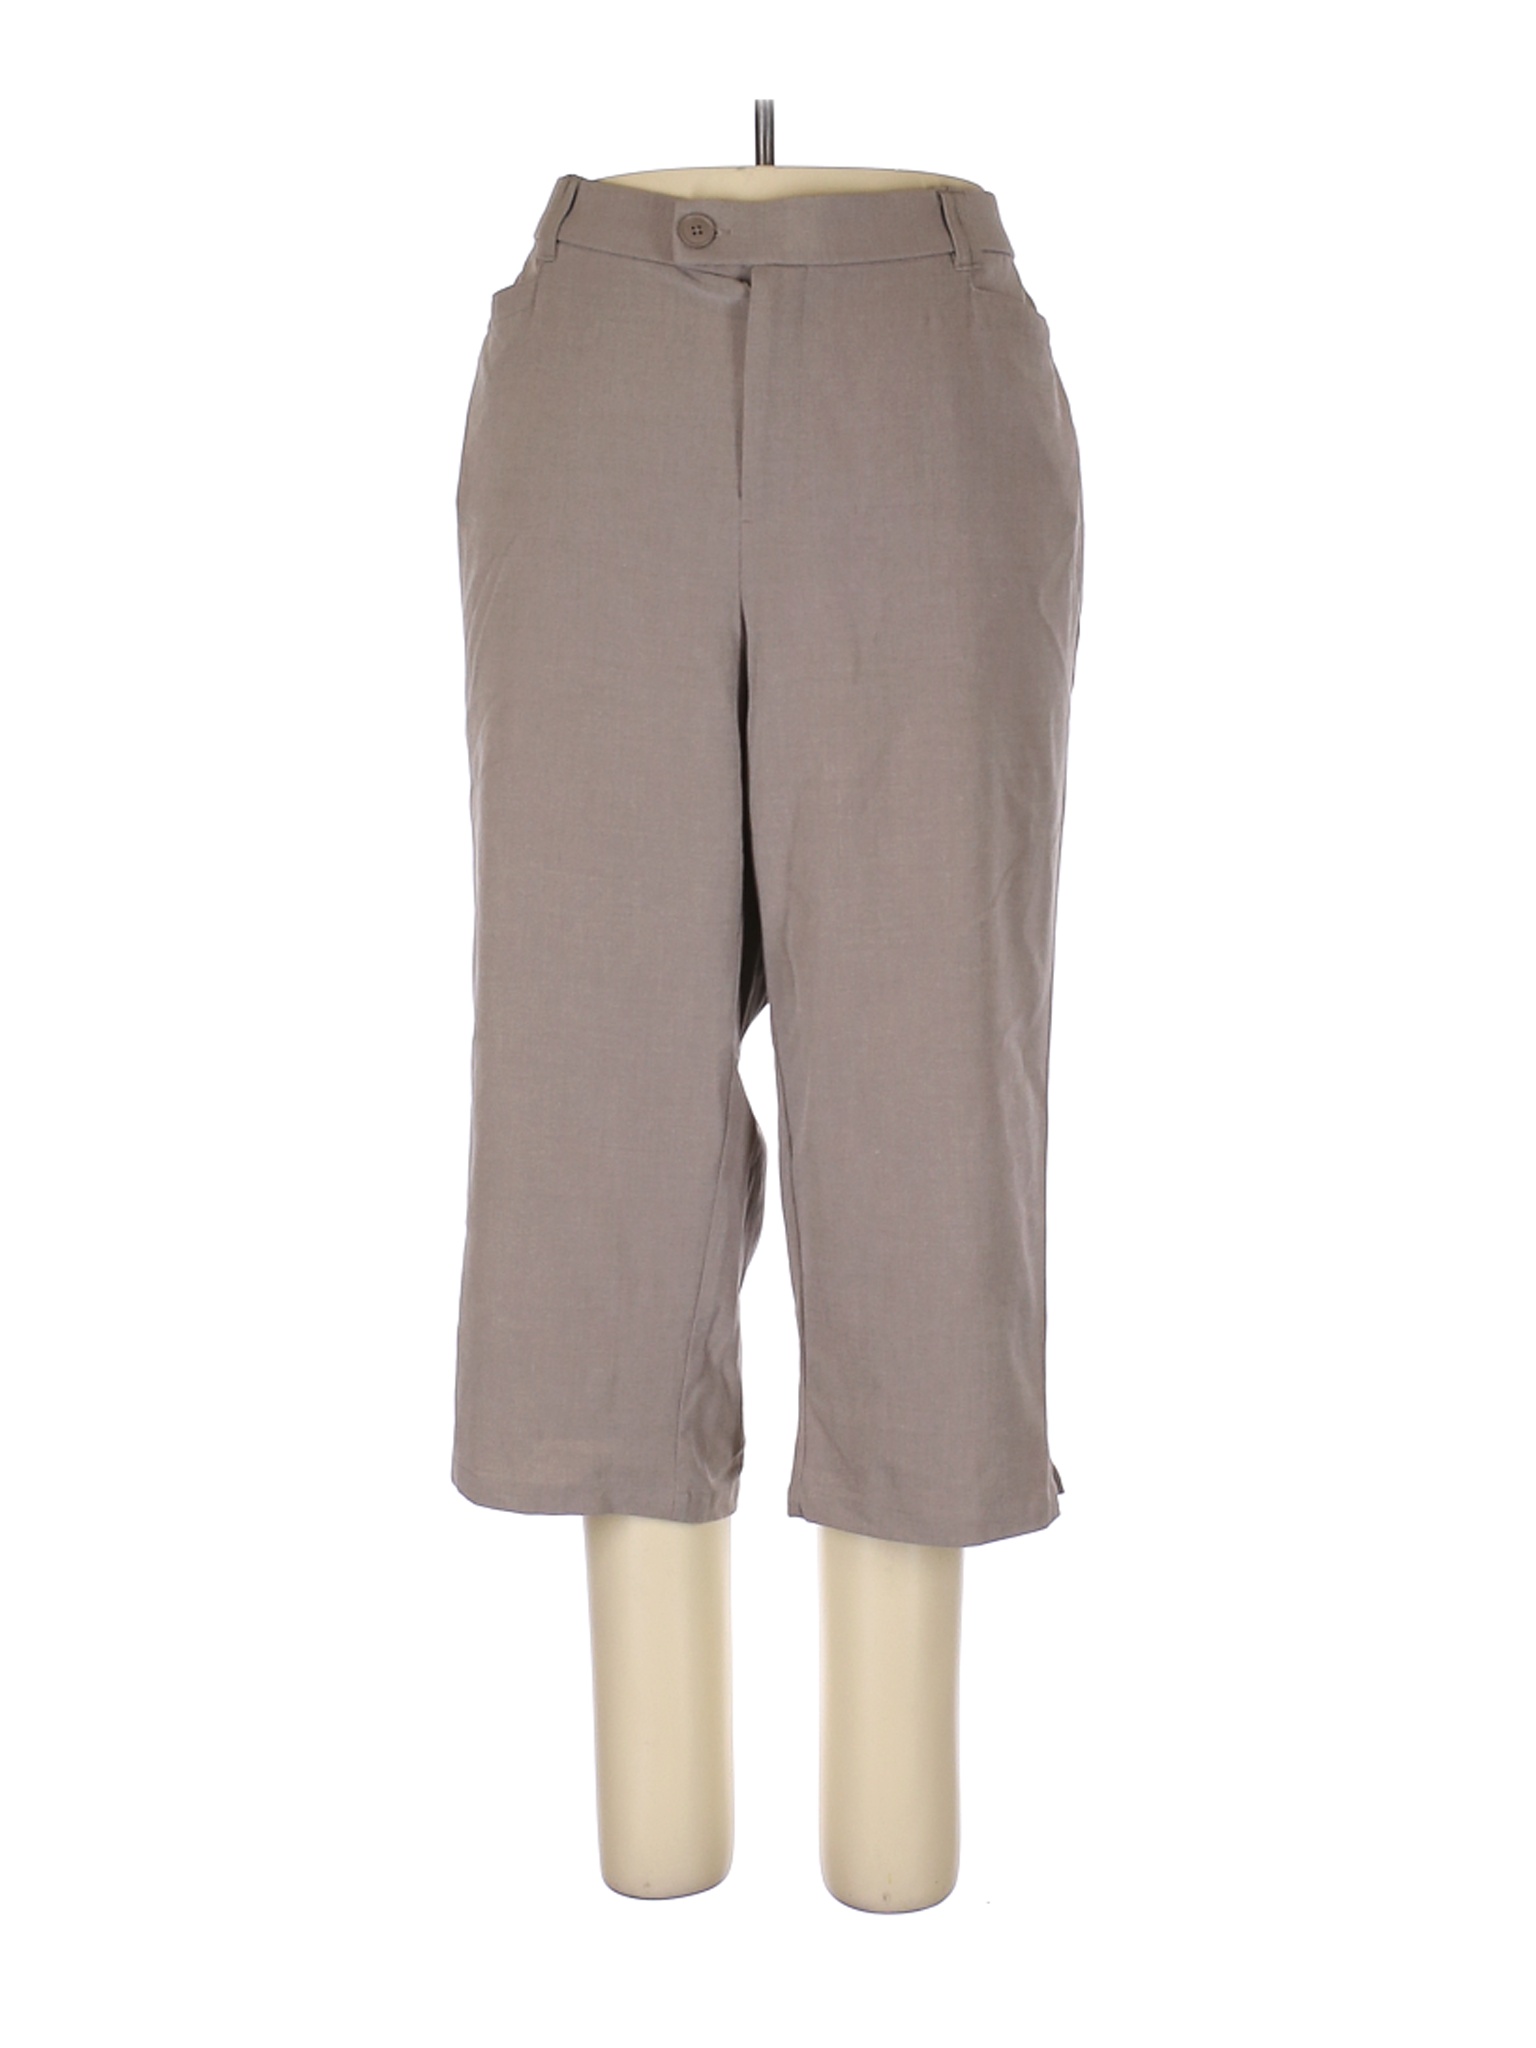 Cj Banks Women Brown Dress Pants 22 Plus | eBay